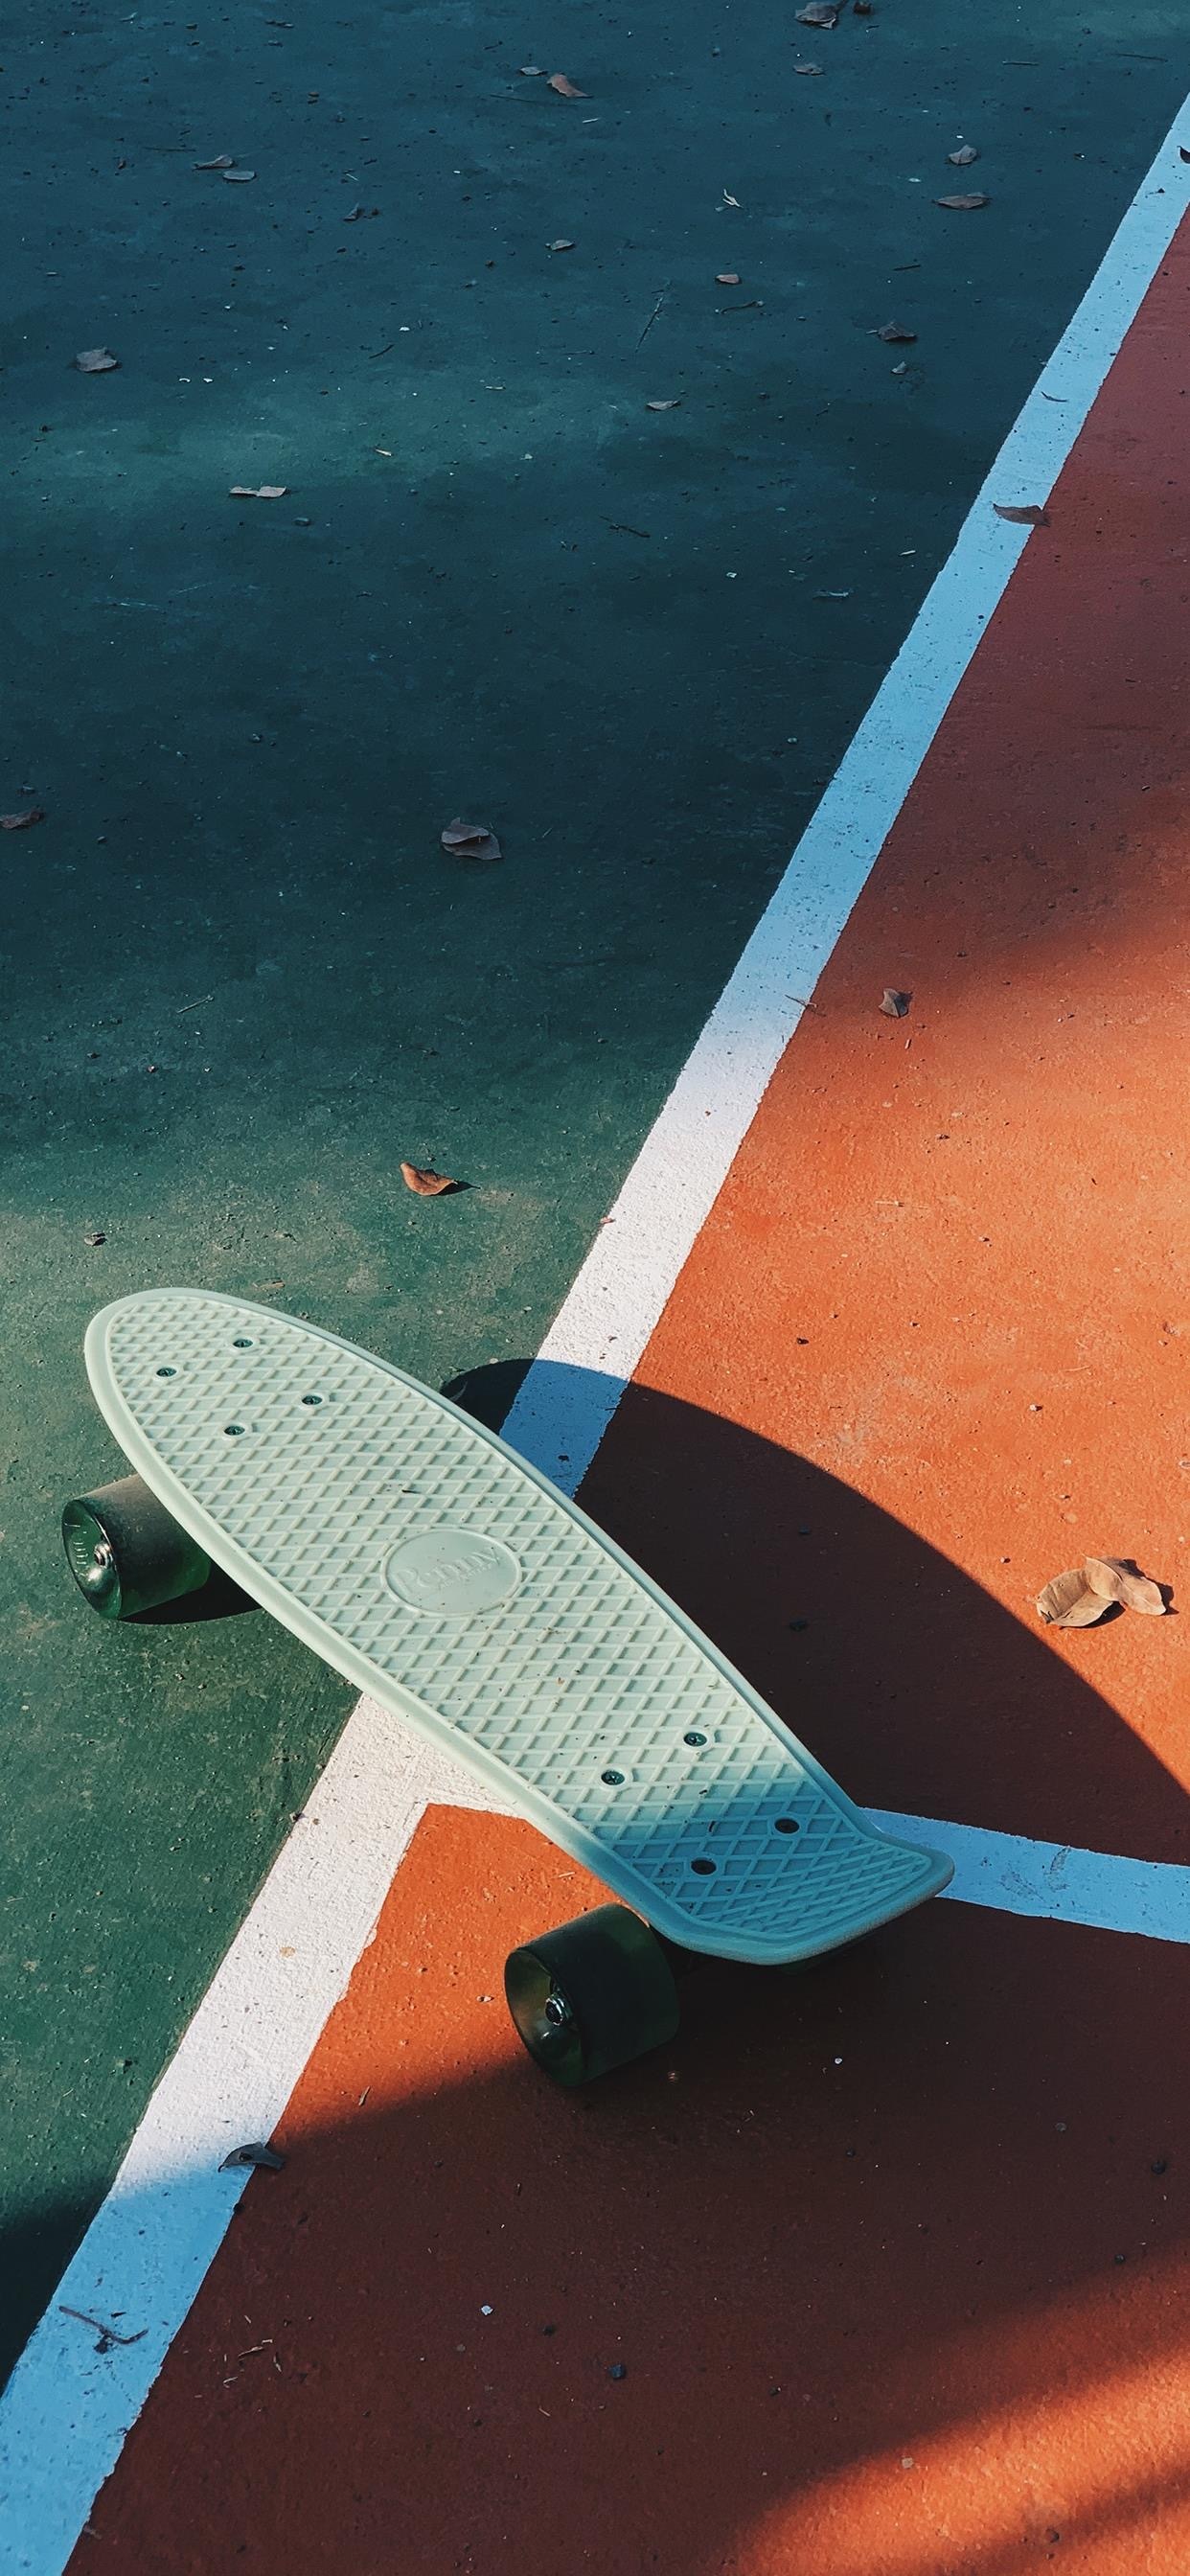 滑板创意帅气手机壁纸